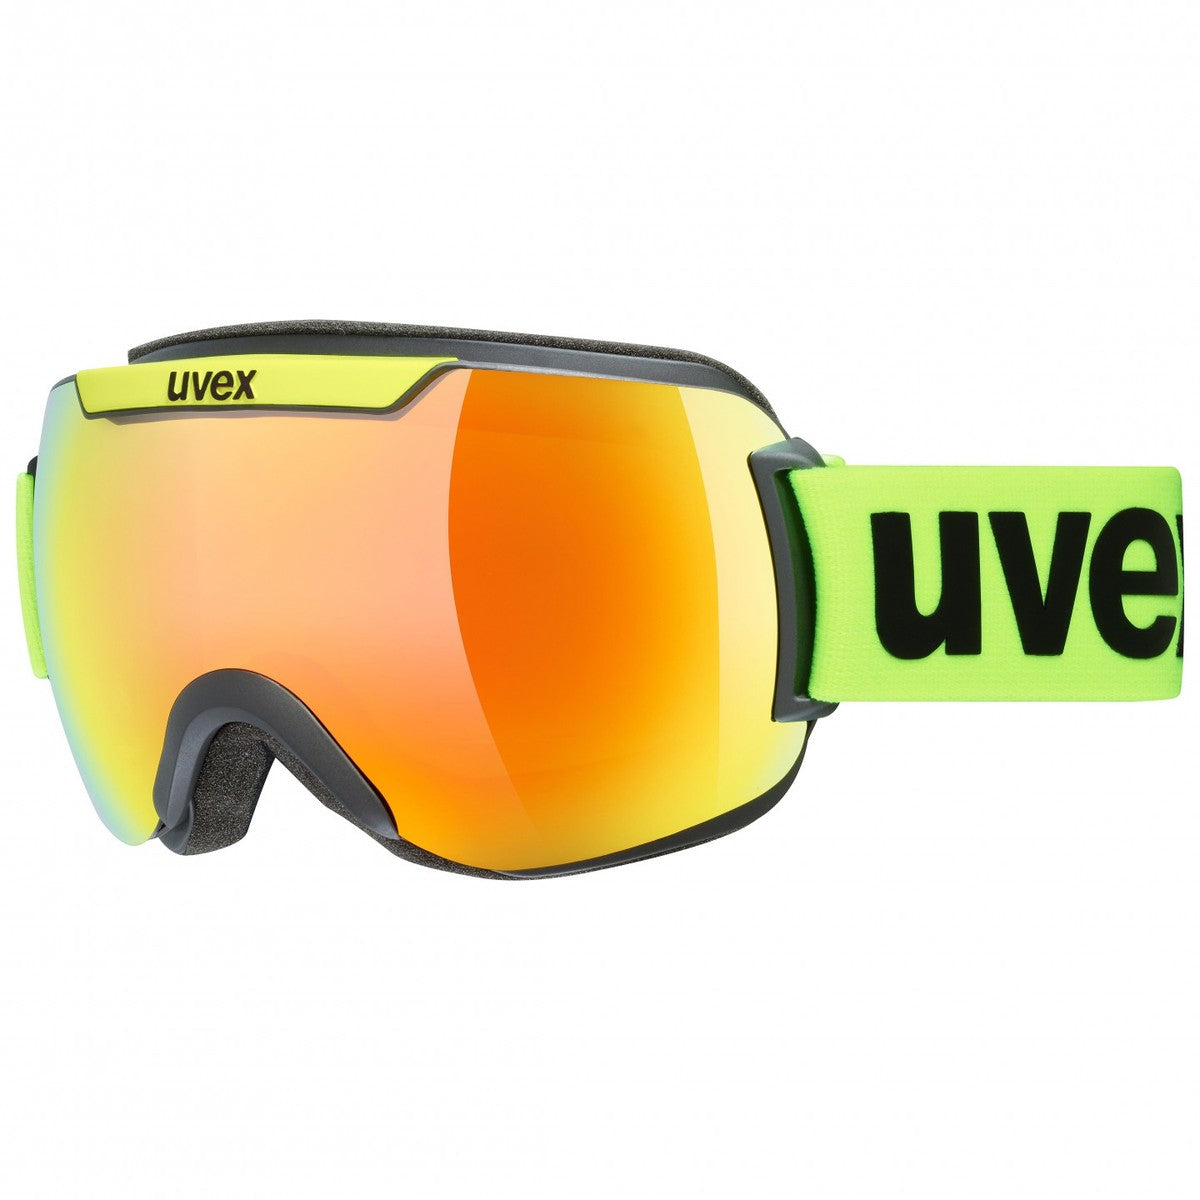 Uvex Downhill 2000 CV skibril zwart/geel